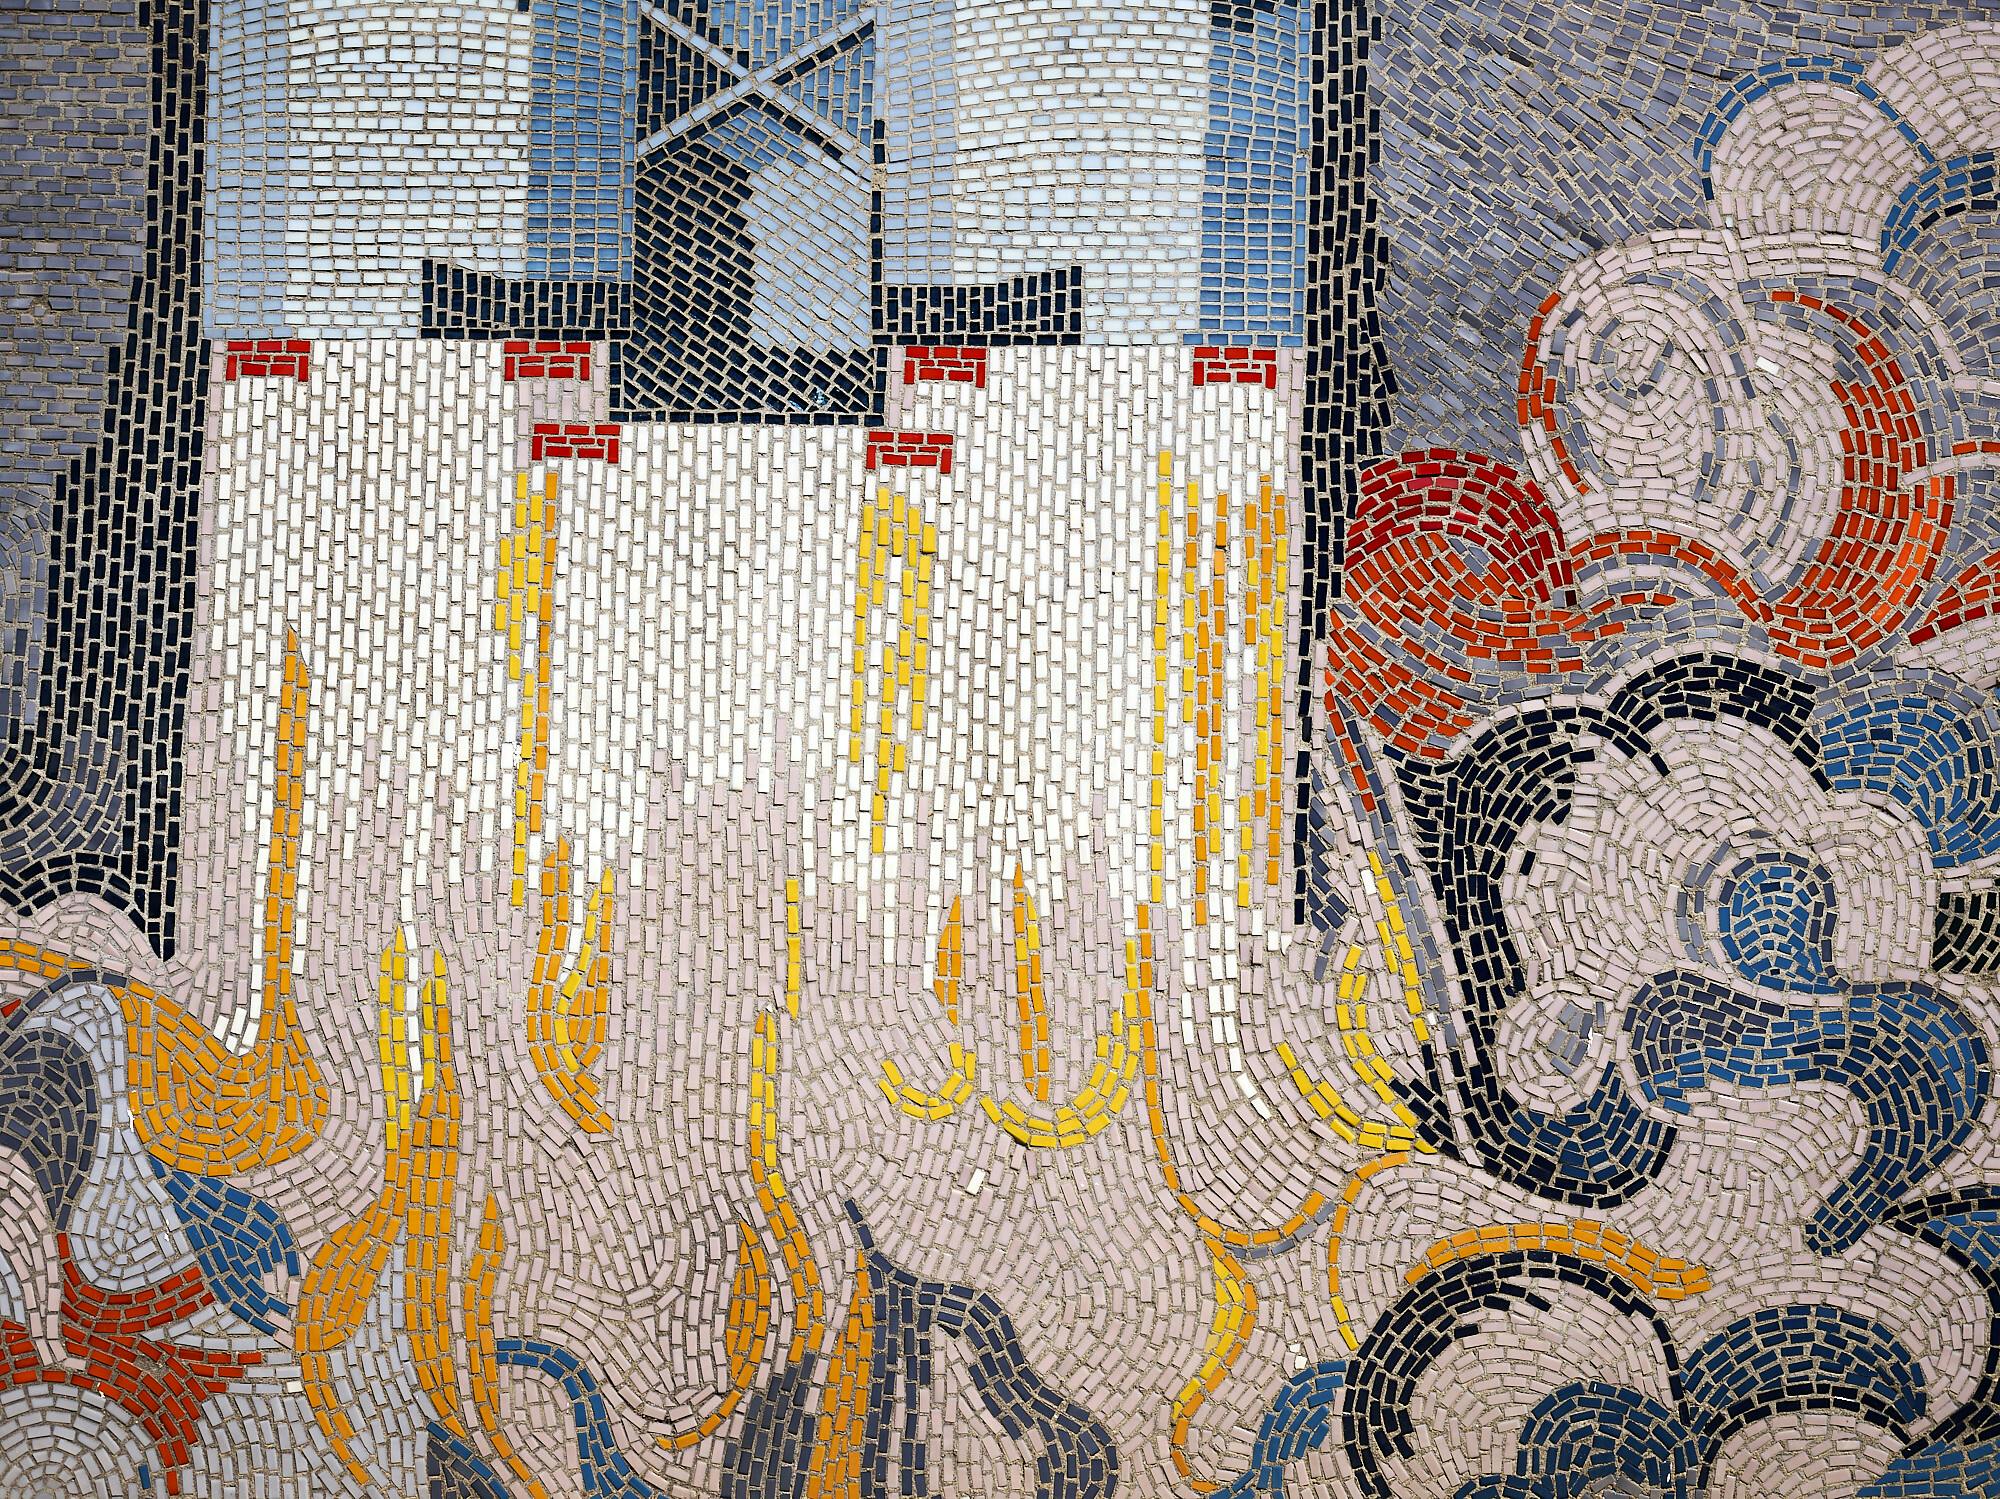 Foto: in einem Mosaik verbinden sich kleine Steinchen zu bewegten Formen, unten eher wolkenartig, oben geometrisch-gerade. Gelb, Rot und Blau überwiegen im Zusammenspiel mit Weiß, Grau und Schwarz.